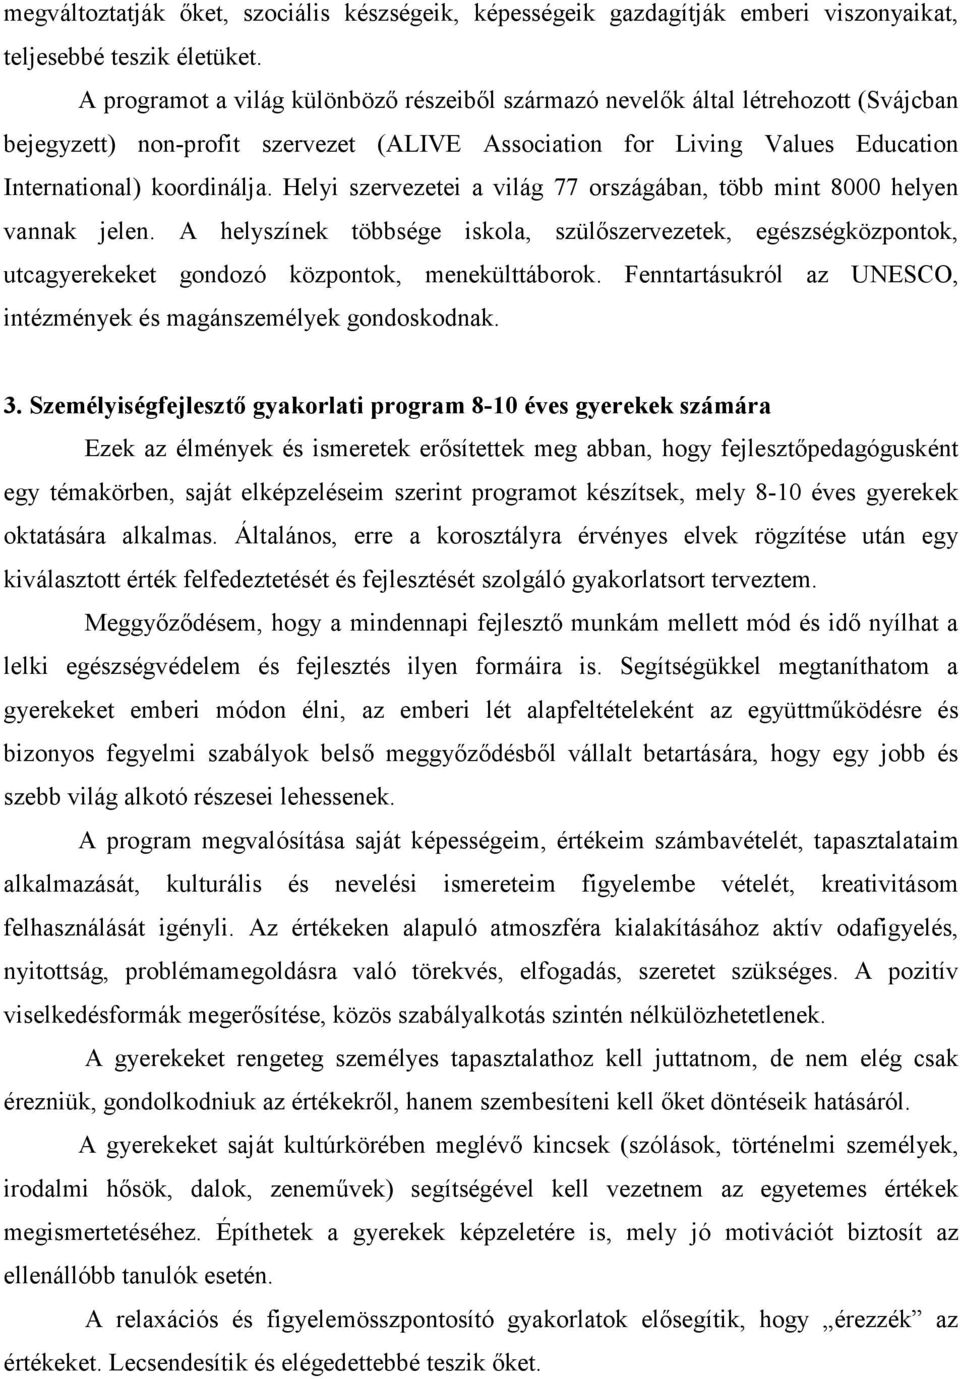 36. Rajczi Imréné: A személyiségfejlesztés egy lehetséges útja - PDF  Ingyenes letöltés